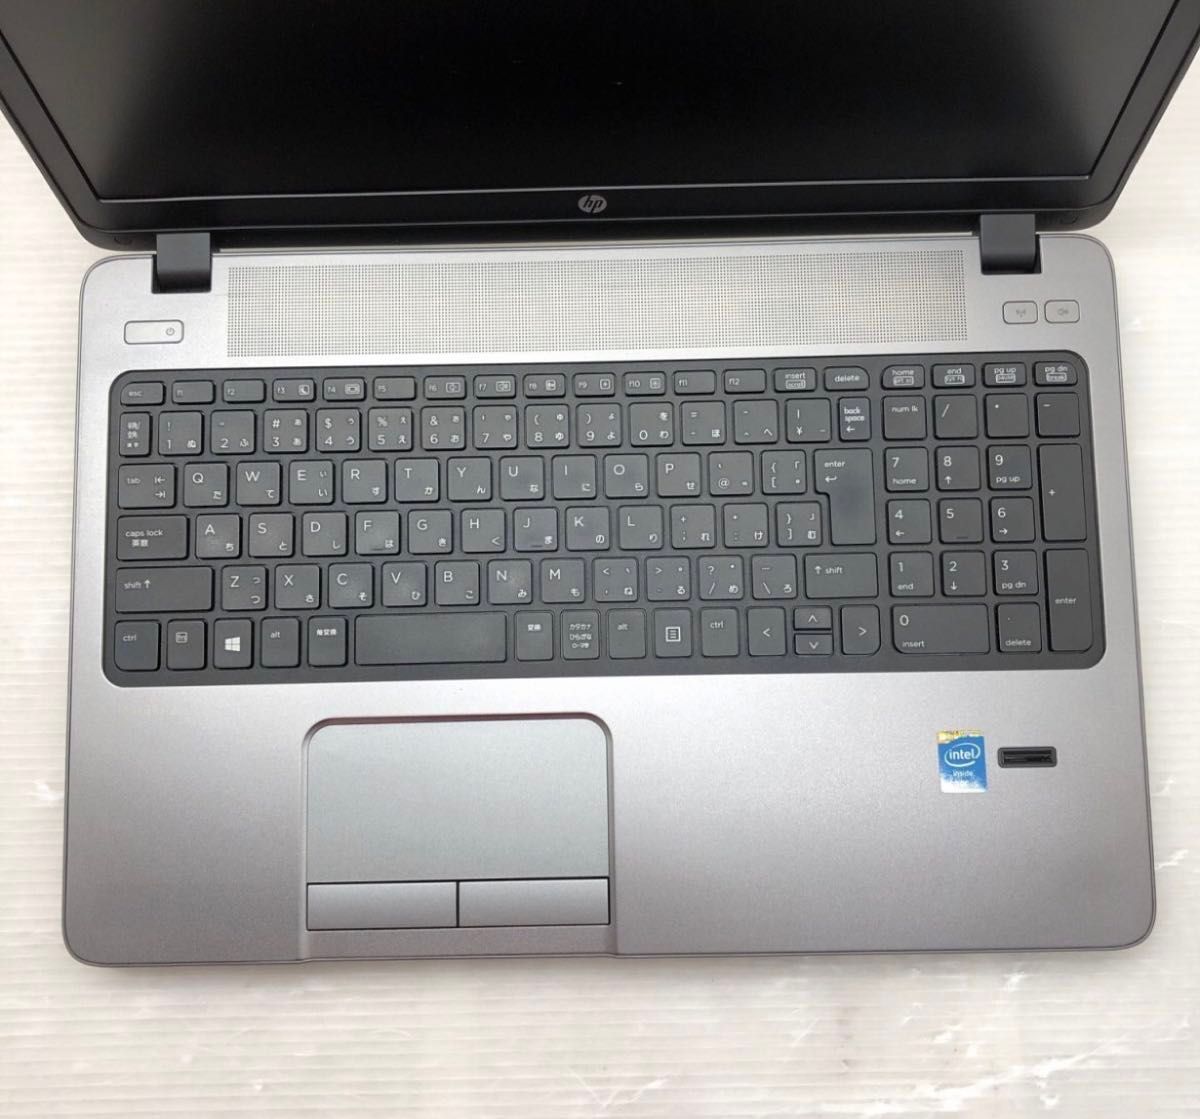  HP ProBook 450 G1 HSTNN-W95C Core i5-4200M メモリ8GB SSD 250GB 15.6